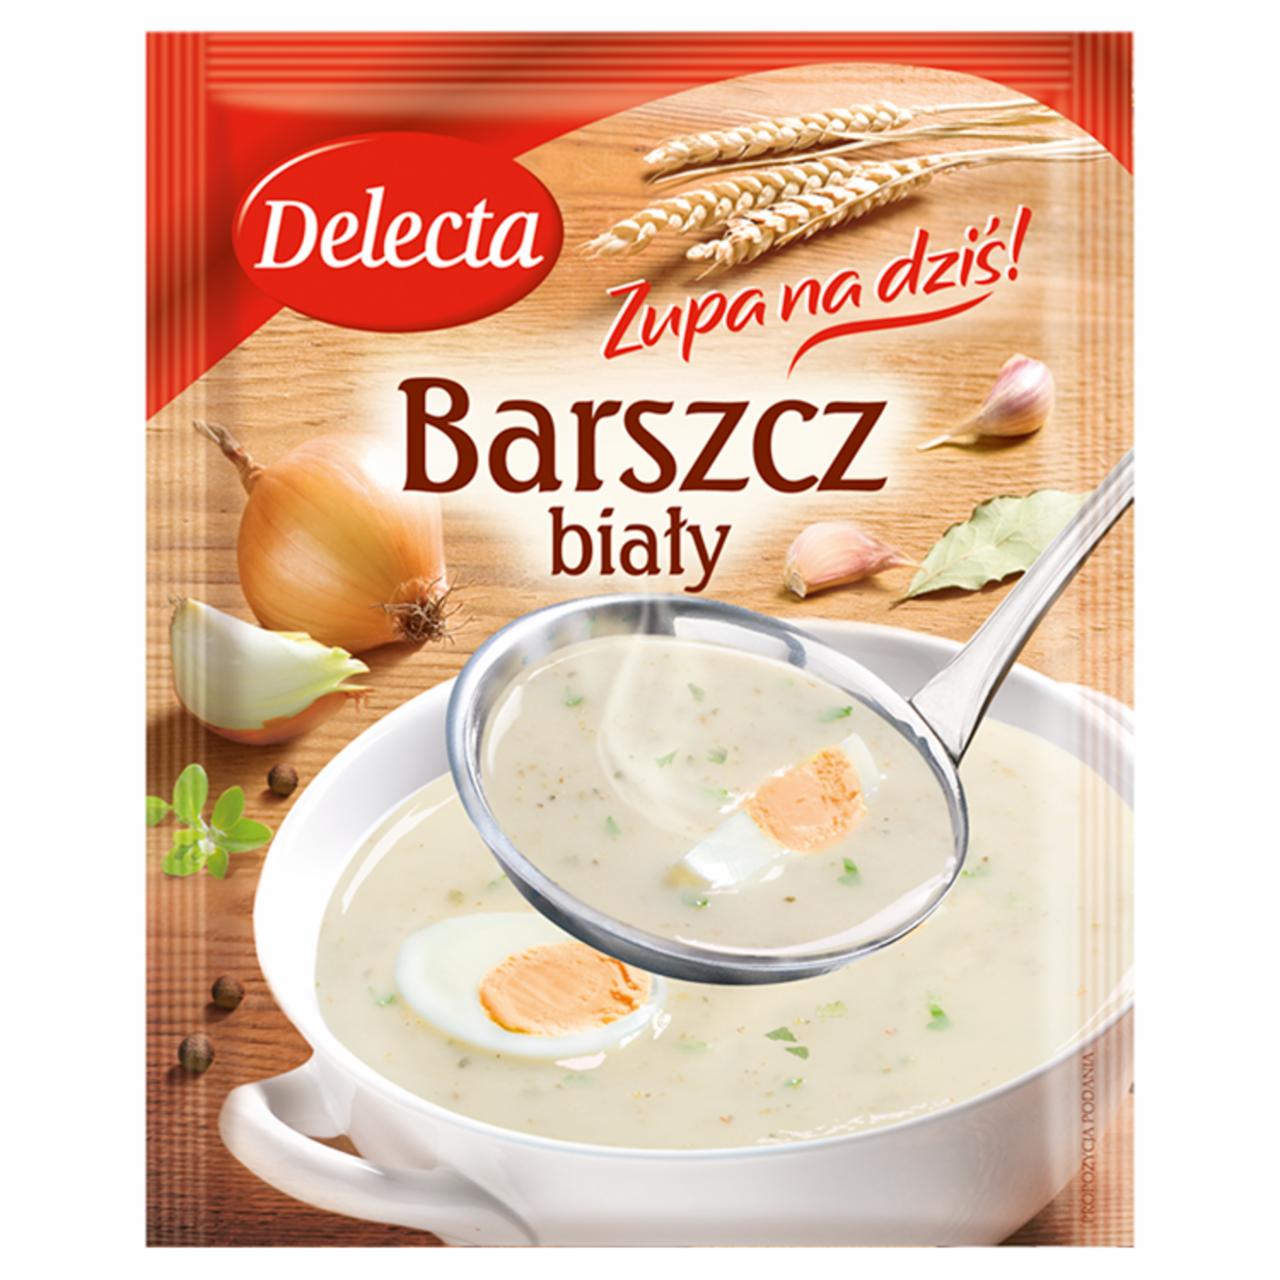 Zdjęcia - Zupa na dziś Barszcz biały kujawski Delecta